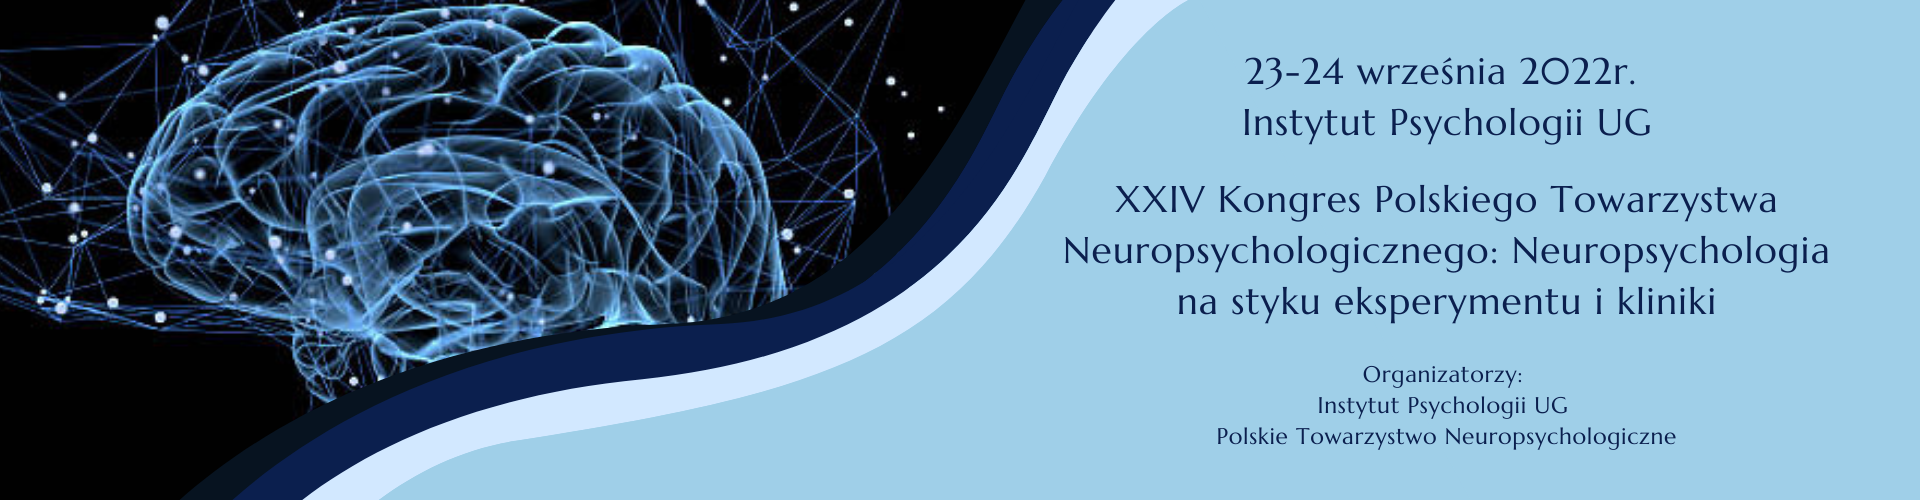 XXIV Kongres Polskiego Towarzystwa Neuropsychologicznego: Neuropsychologia na styku eksperymentu i kliniki